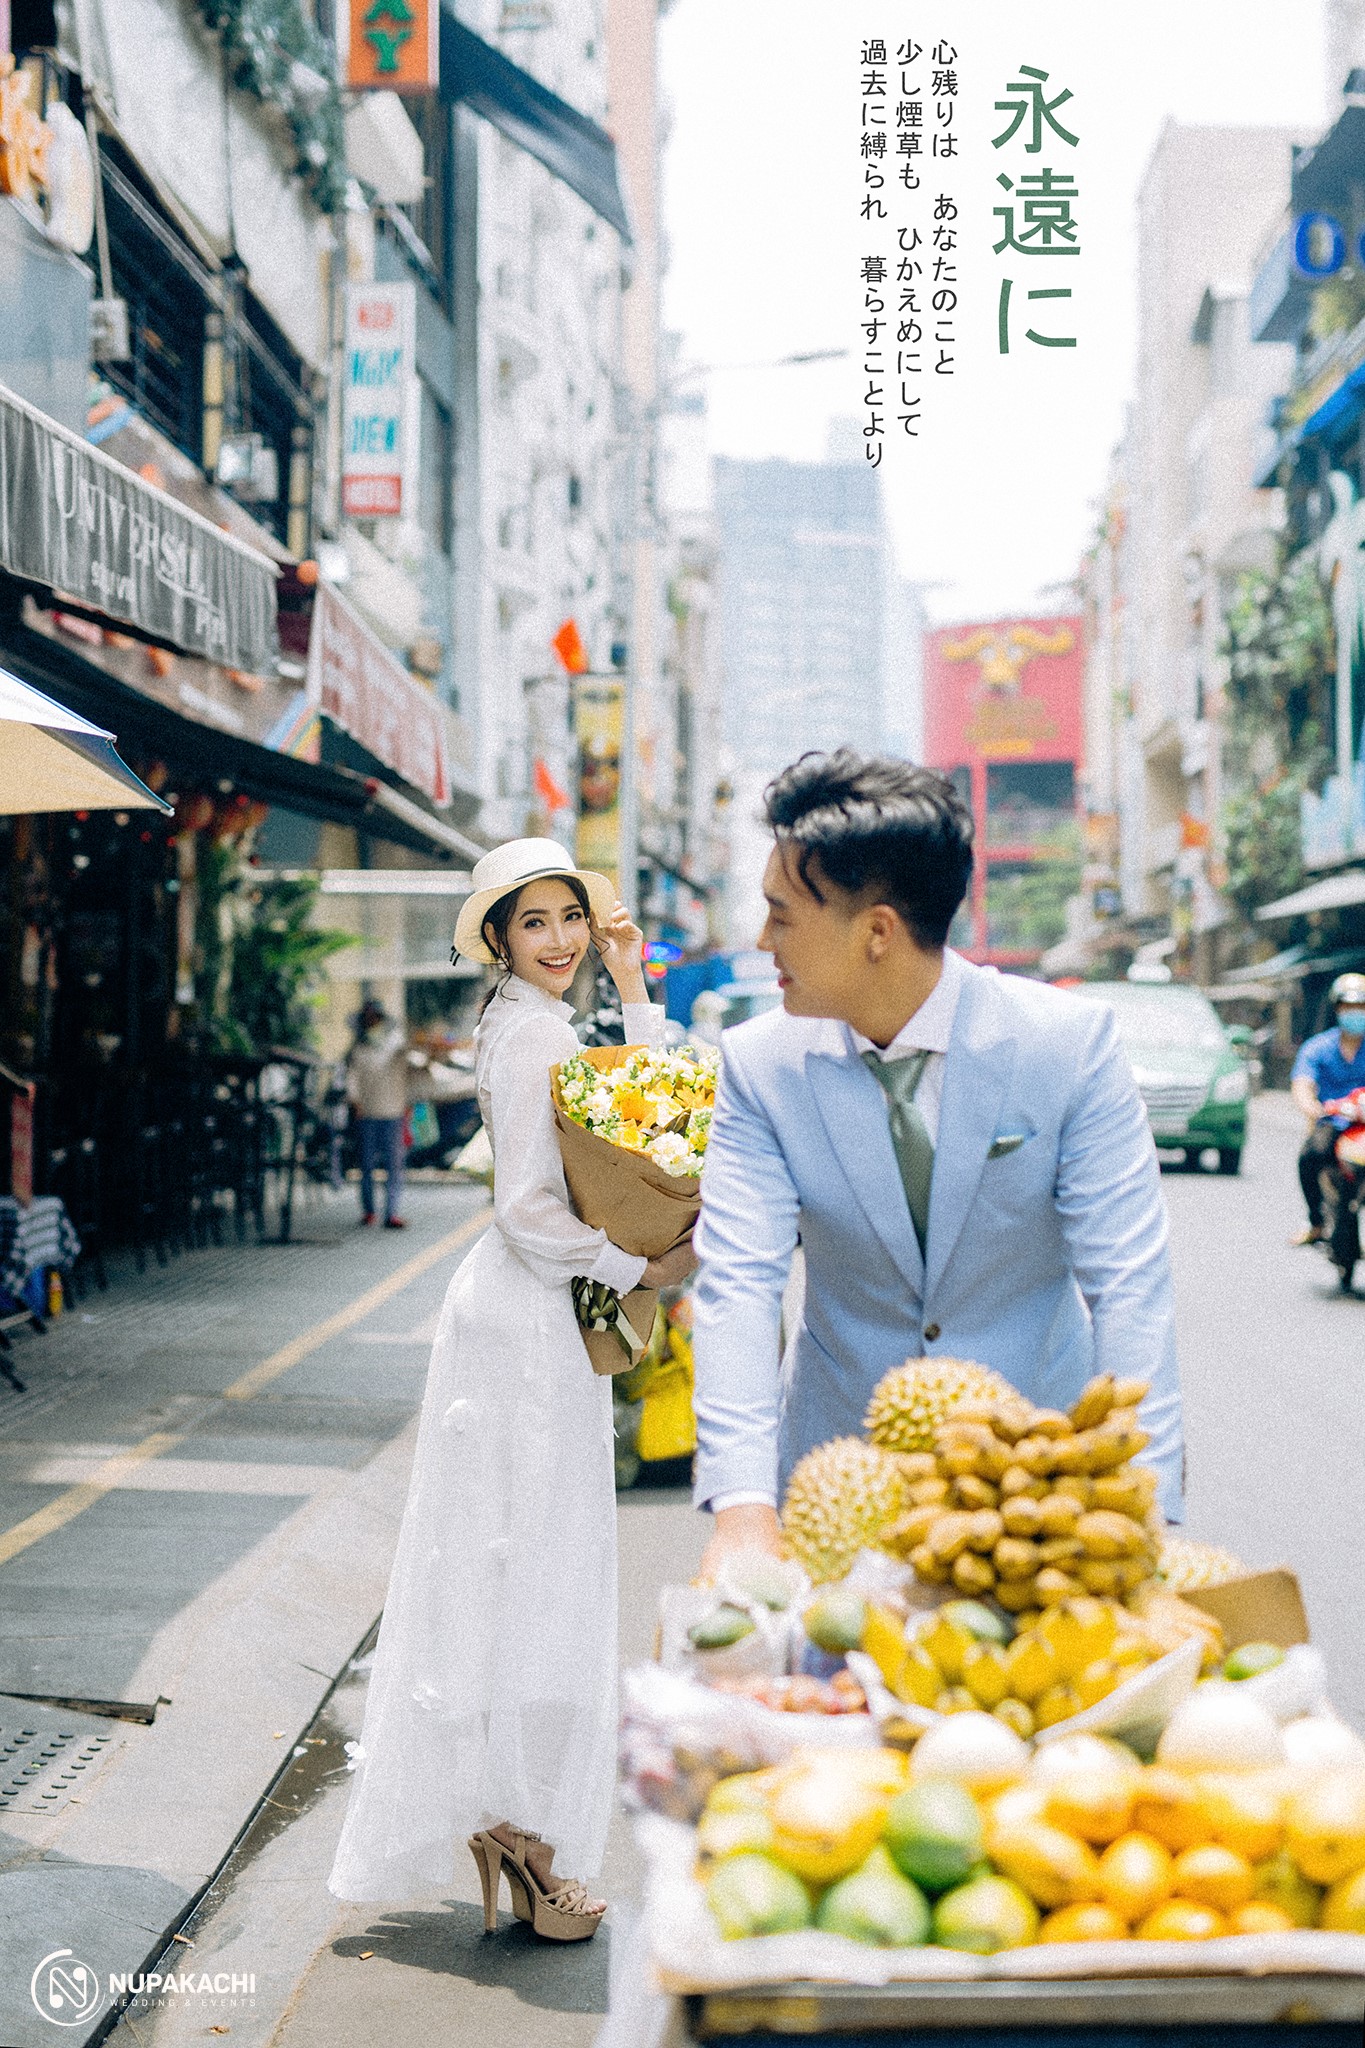 tiệm chụp ảnh cưới đẹp ở Sài Gòn